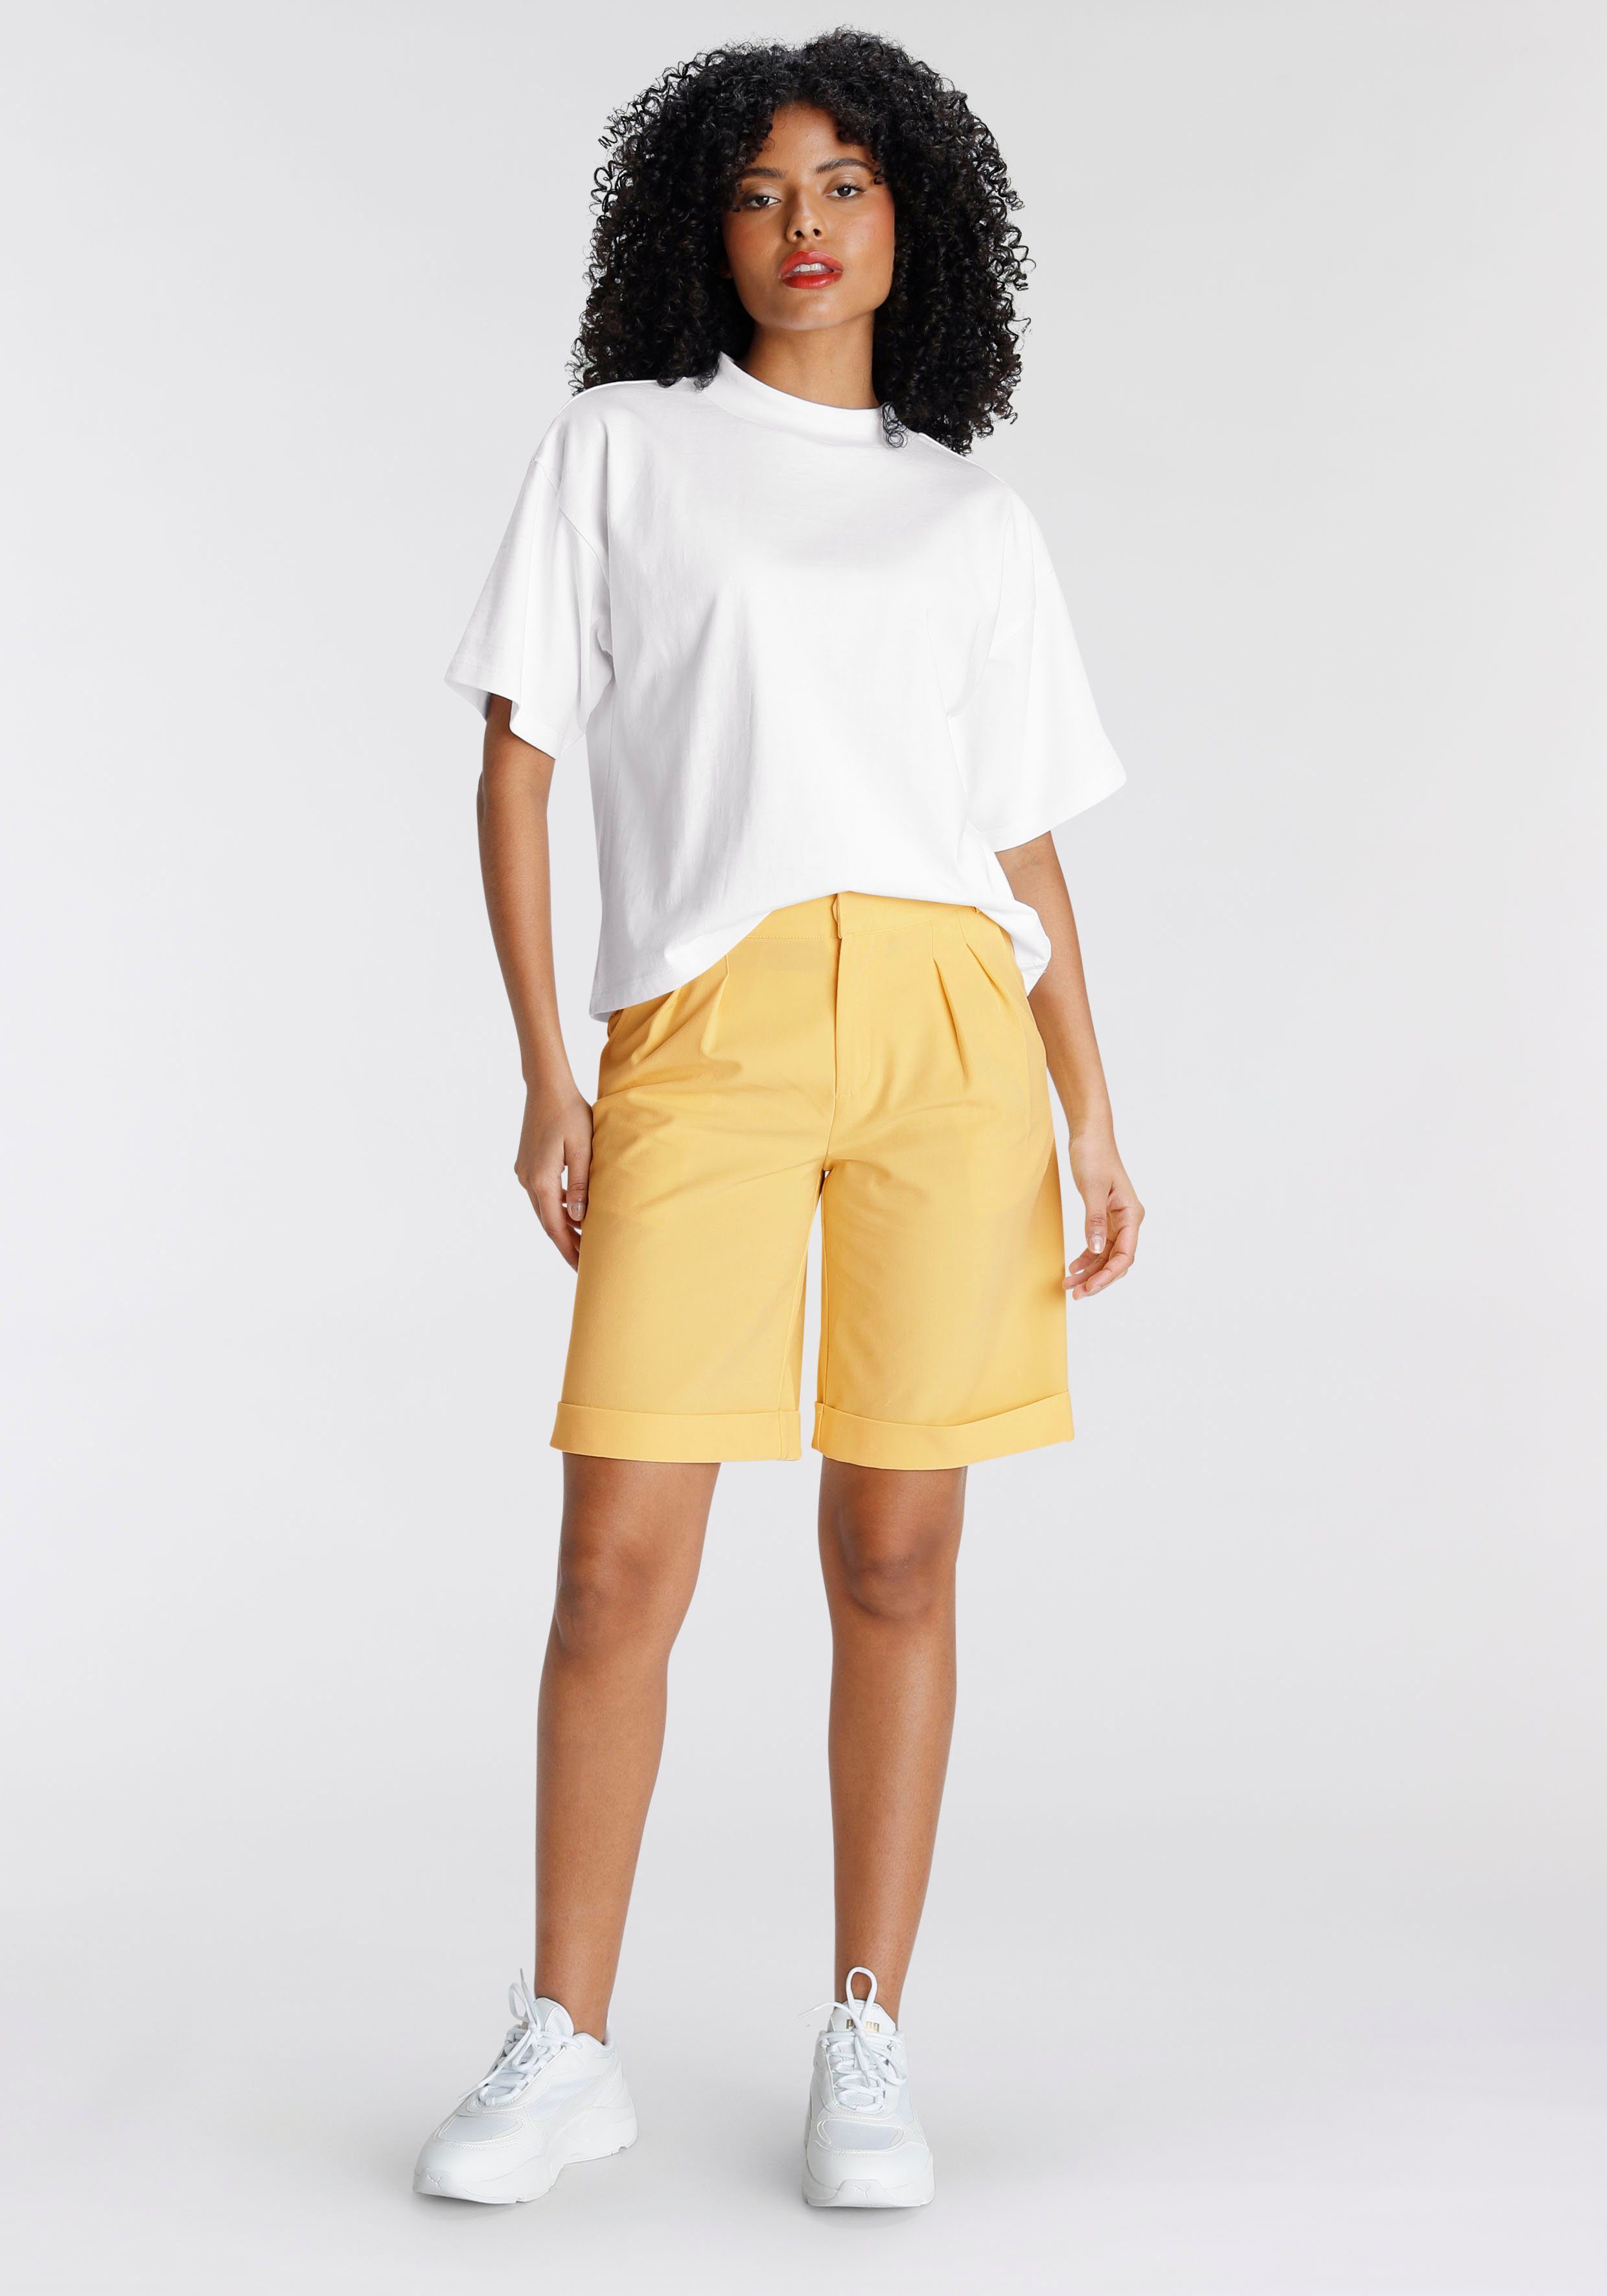 AJC Oversize-Shirt weiß mit Rippen-Rundhalsausschnitt breitem modisch